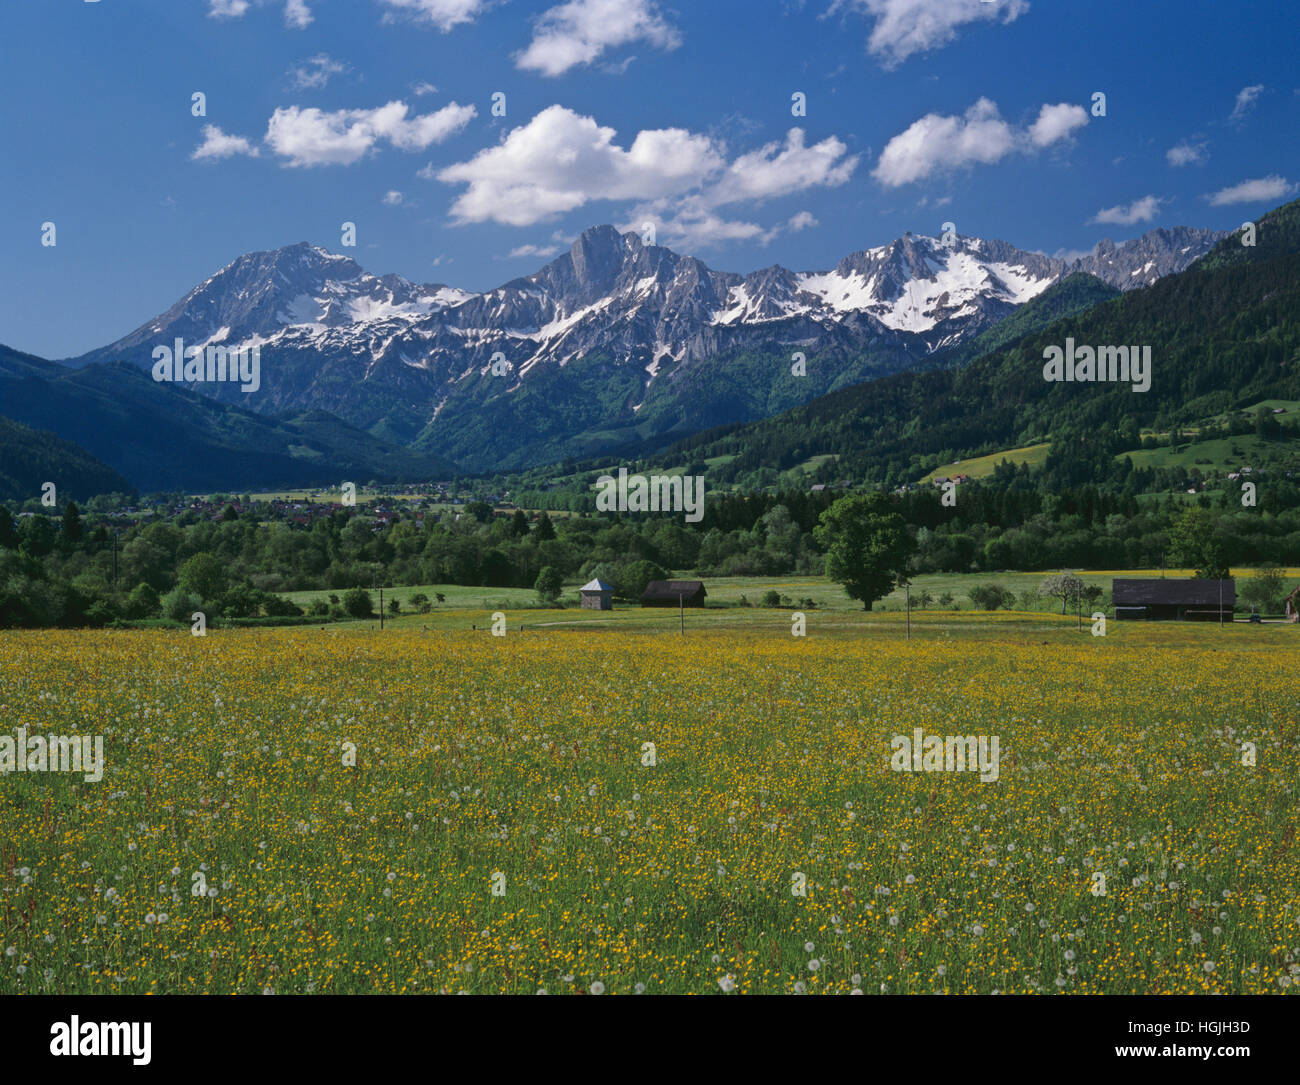 Hallermauern Mountain Range, Admont, Styria, Austria Stock Photo